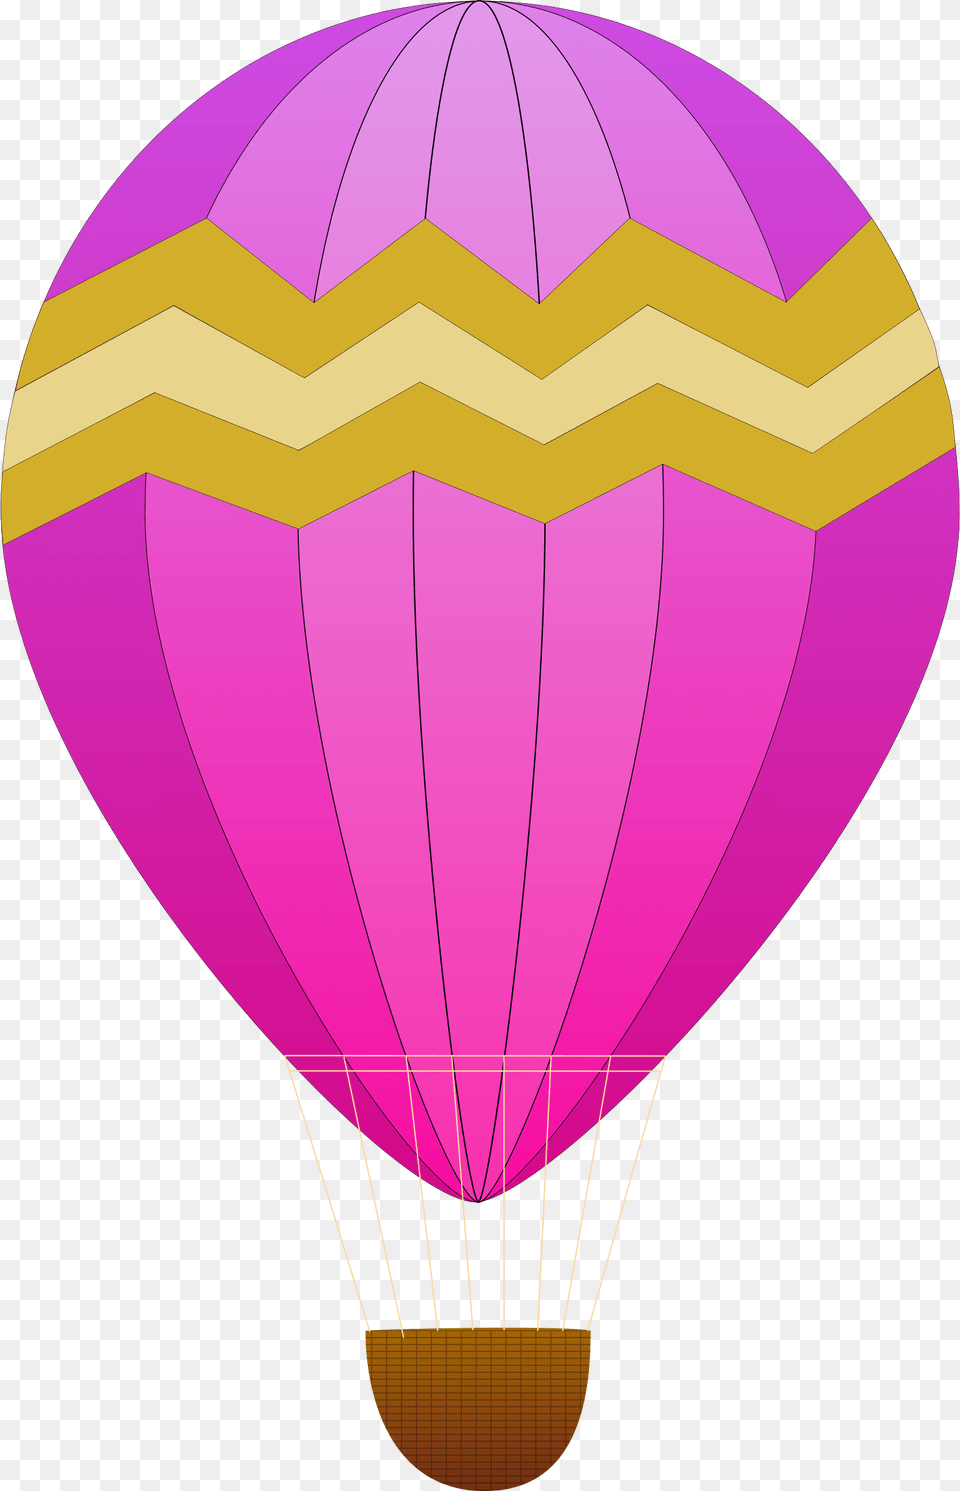 Hot Air Balloons Icons, Aircraft, Hot Air Balloon, Transportation, Vehicle Png